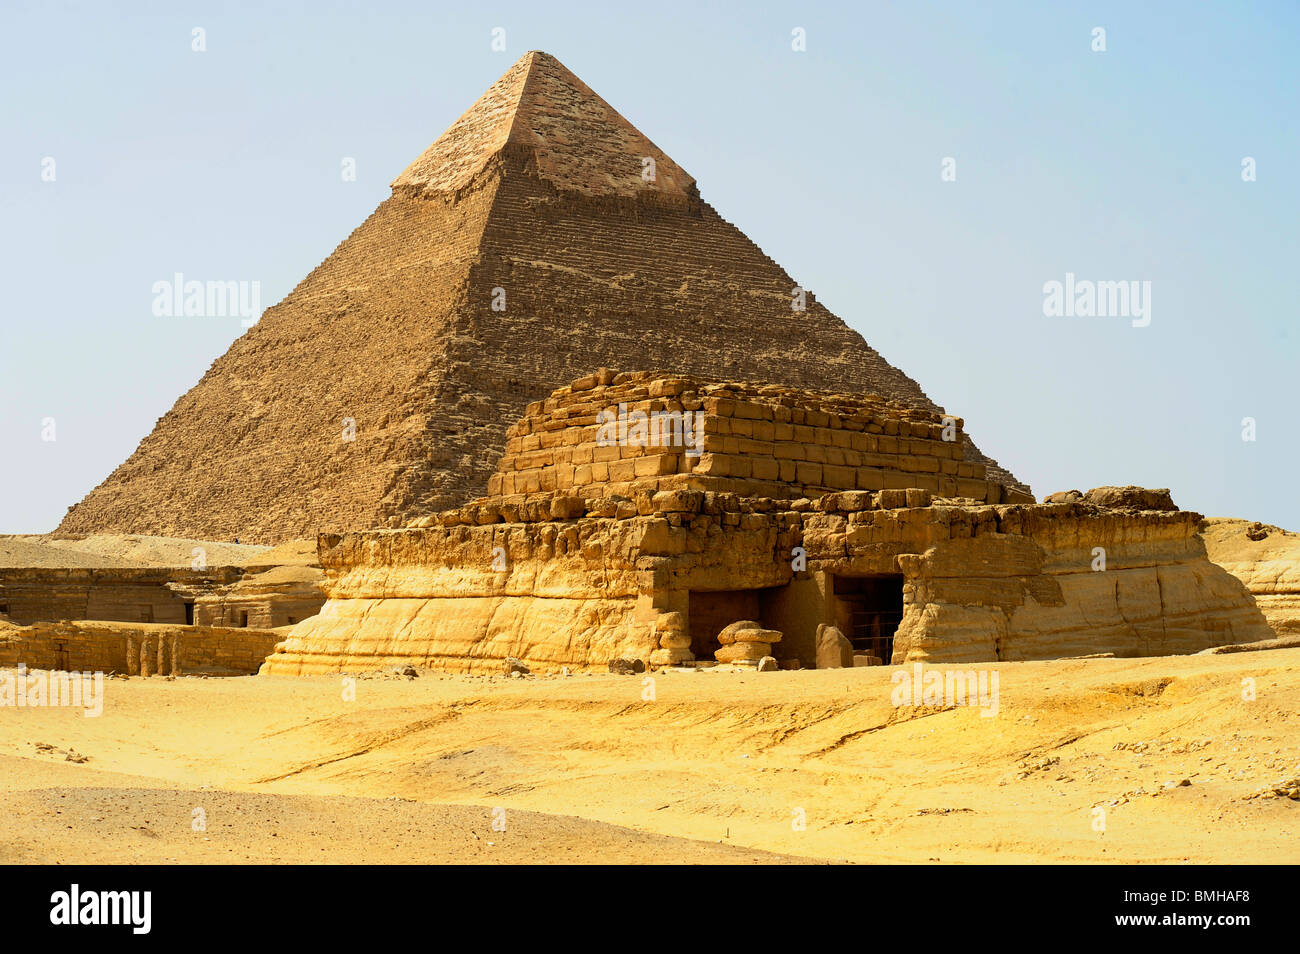 Pyramids of giza, Giza Necropolis bordering what is now El Giza, cairo , egypt Stock Photo